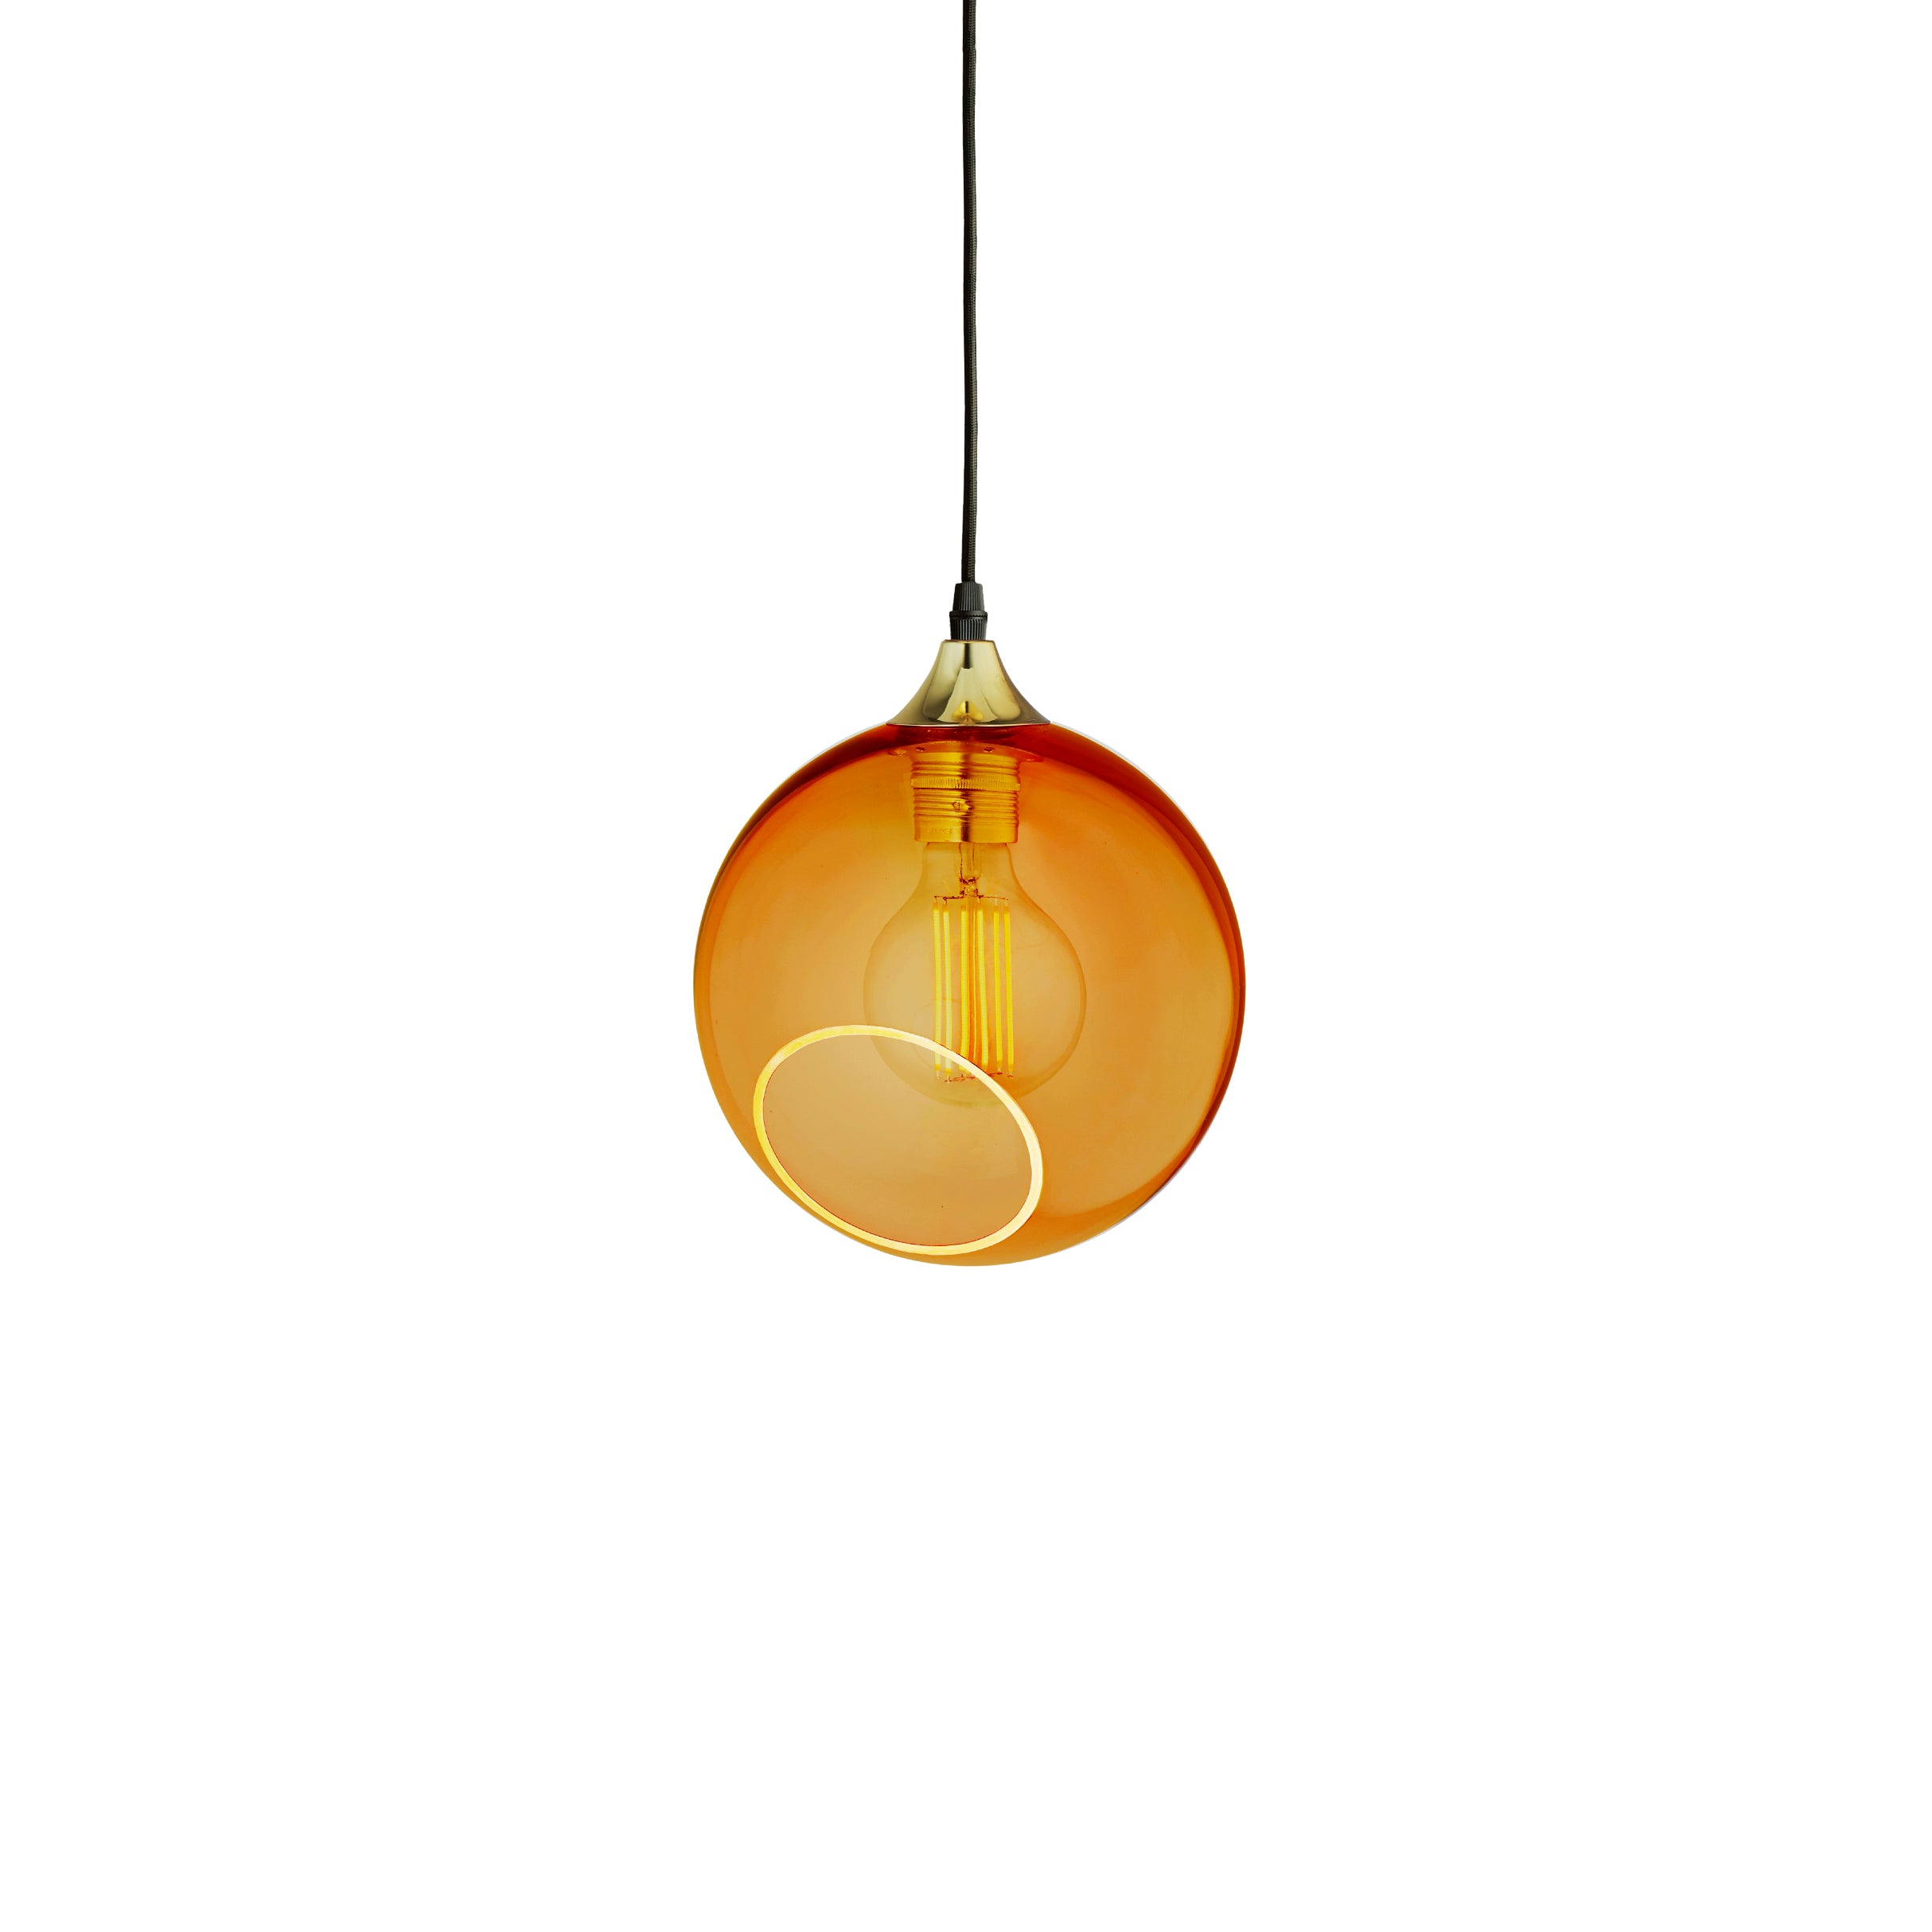 Rund lampe i orange/gul glas med et afskåret stykke med kig til pæren. Fatning of rosetten er guldfarvet og ledningen er af sort stof.